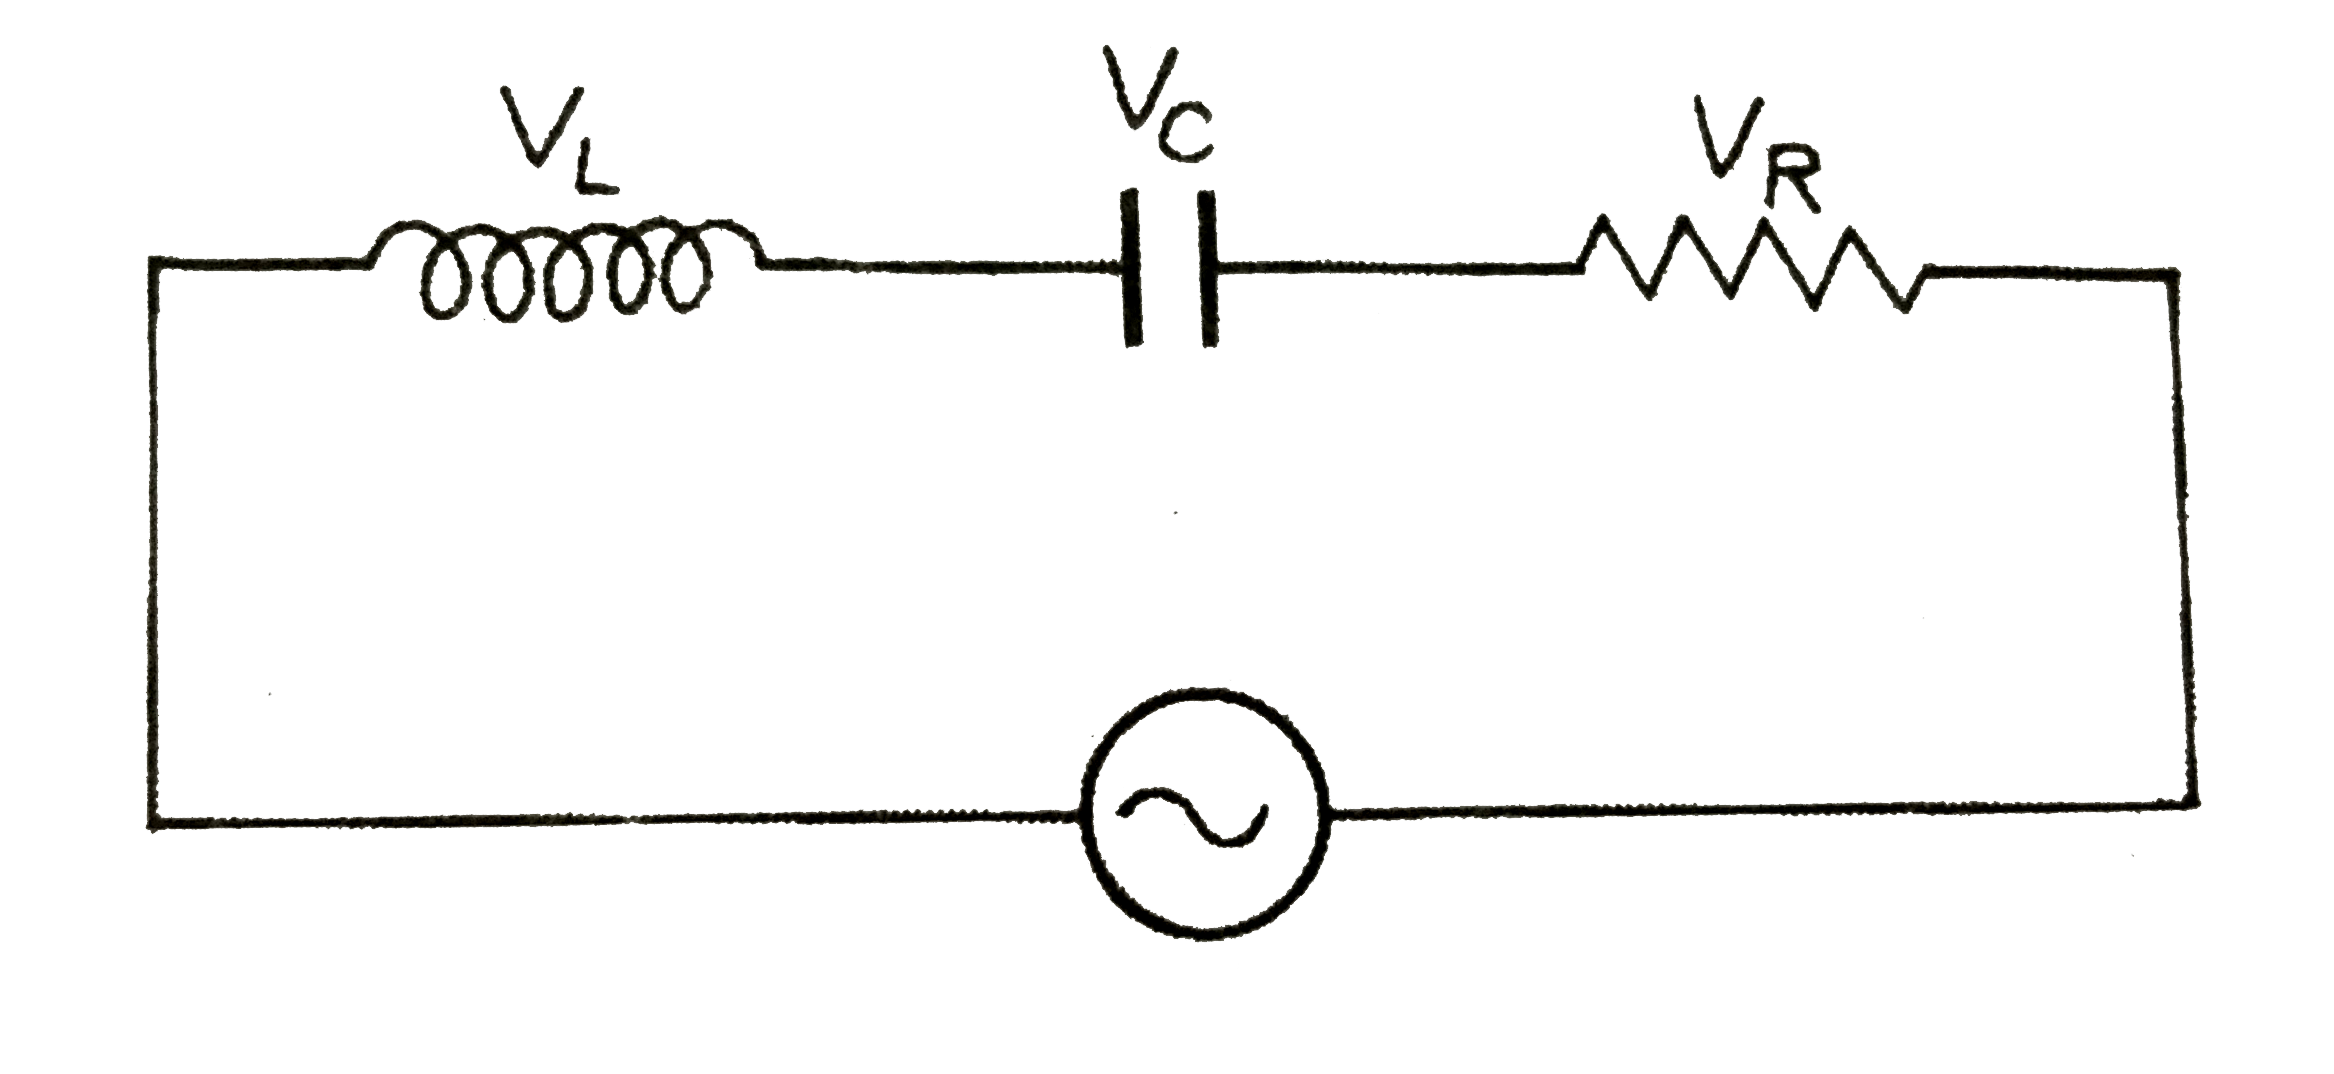 सलग्न चित्र  में  प्रत्यावर्ती  वोल्ट्मीटर द्वारा  नापे  गये विभवान्तर  क्रमश : VL=20 V,VC=11 V तथा  VR=12 V   प्राप्त  हुए । परिणामी  विभवान्तर  तथा  परिपथ धारा  में कलान्तर  ज्ञात कीजिए ।